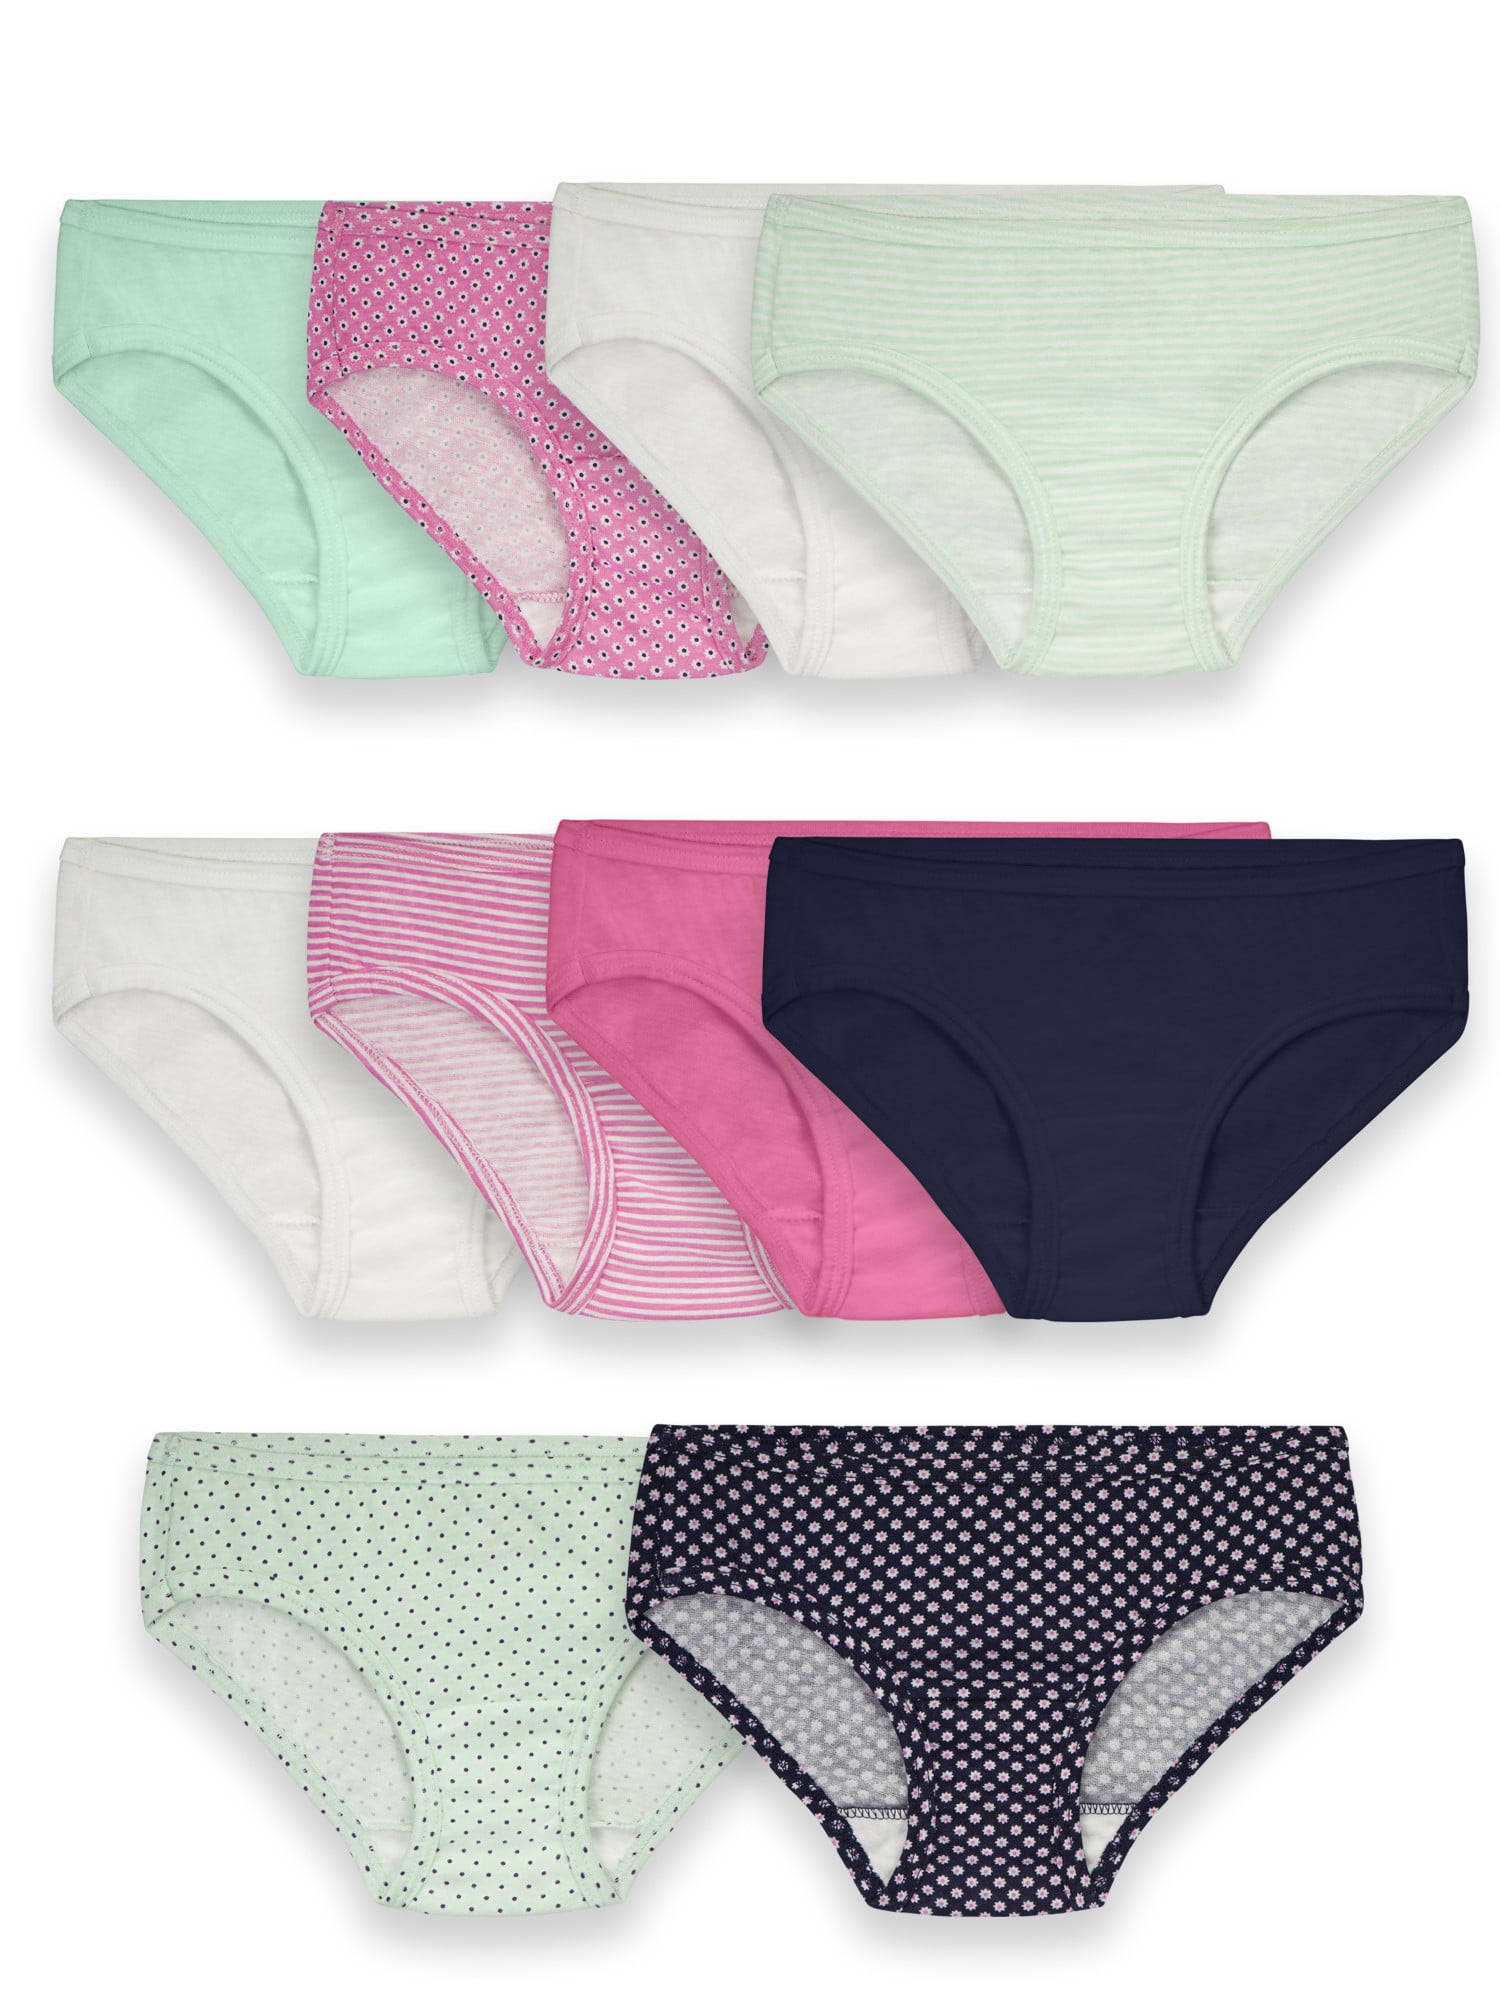 Jessica Simpson Girls Underwear, 10 Pack Kids Panties, Sizes 4-12 Hipster  Briefs 